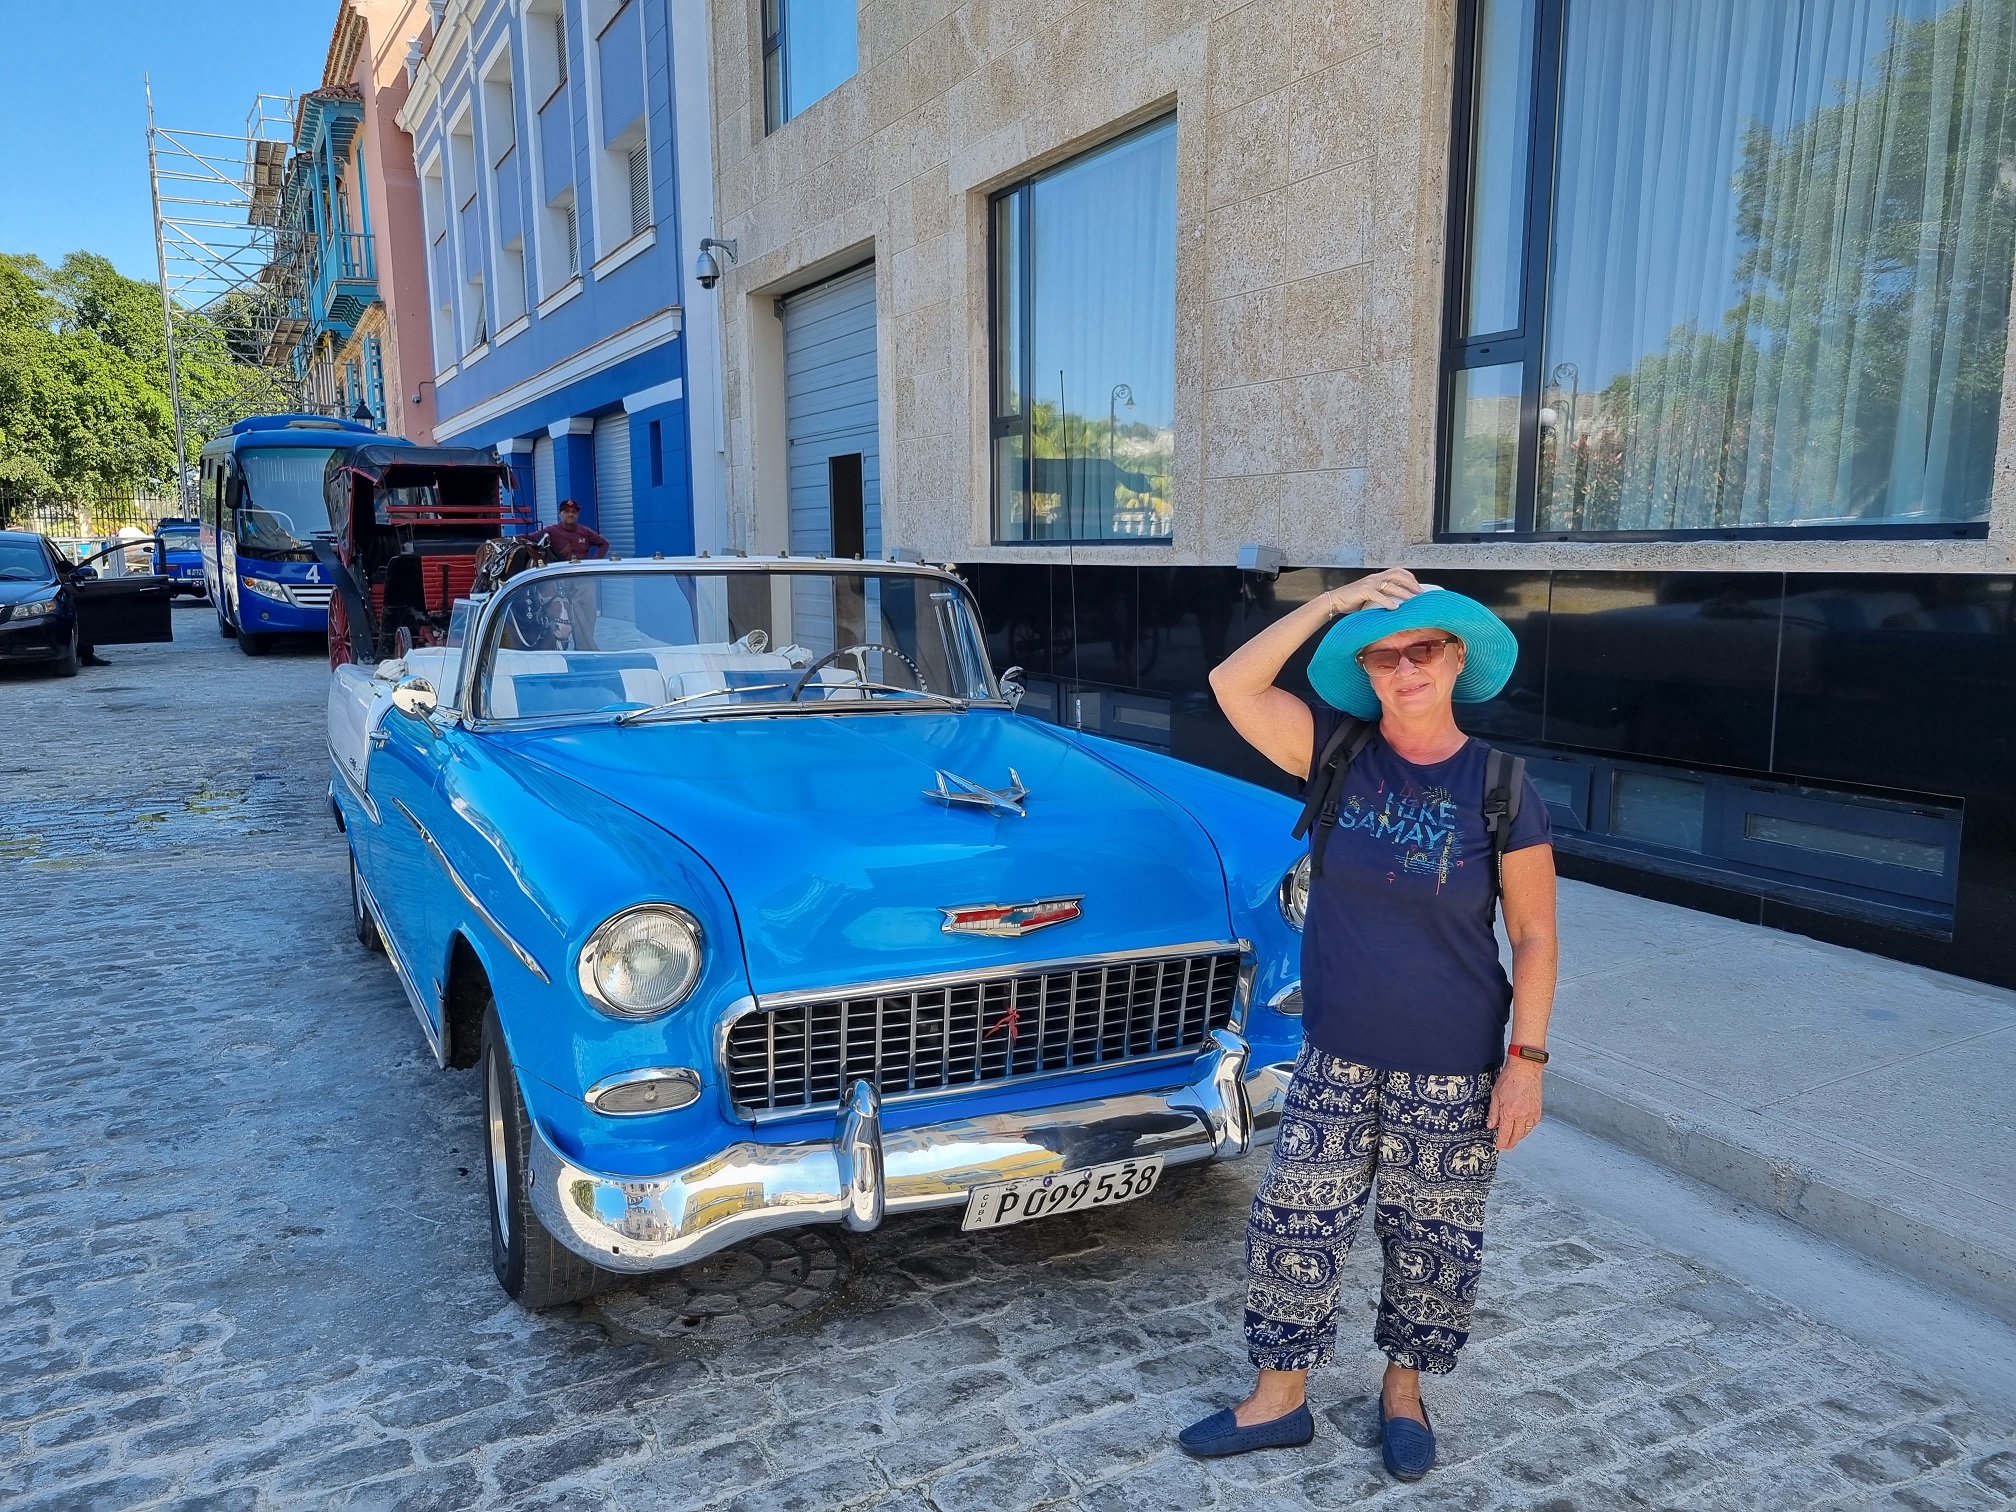 Kék autó, kék ruha. Pont ehhez az autó színéhez öltöztem. :)